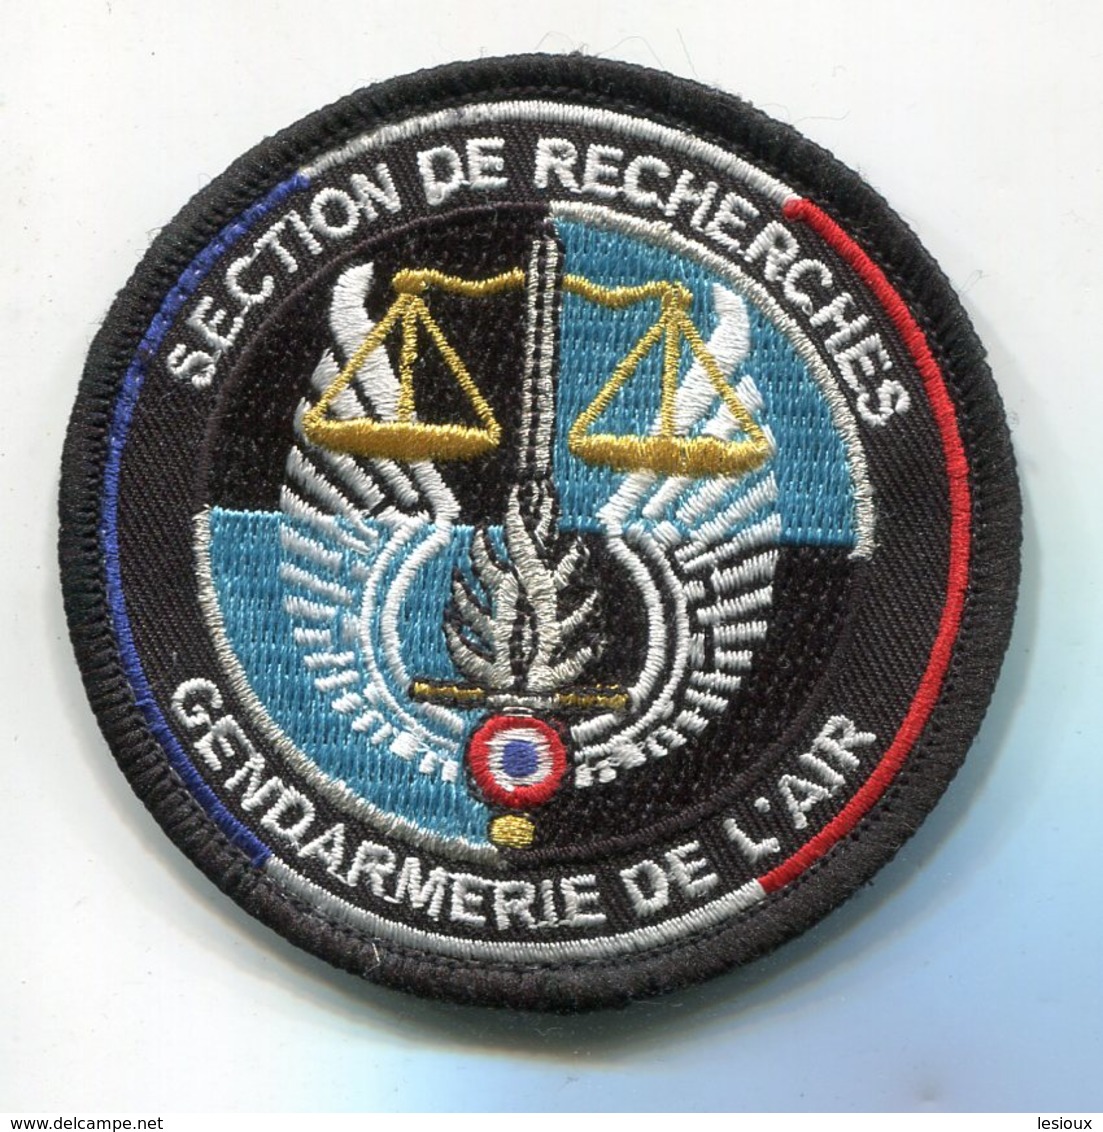 X452 PATCH ECUSSON GENDARMERIE VELCRO NOIR SECTION DE RECHERCHE GENDARMERIE DE L'AIR - Polizia